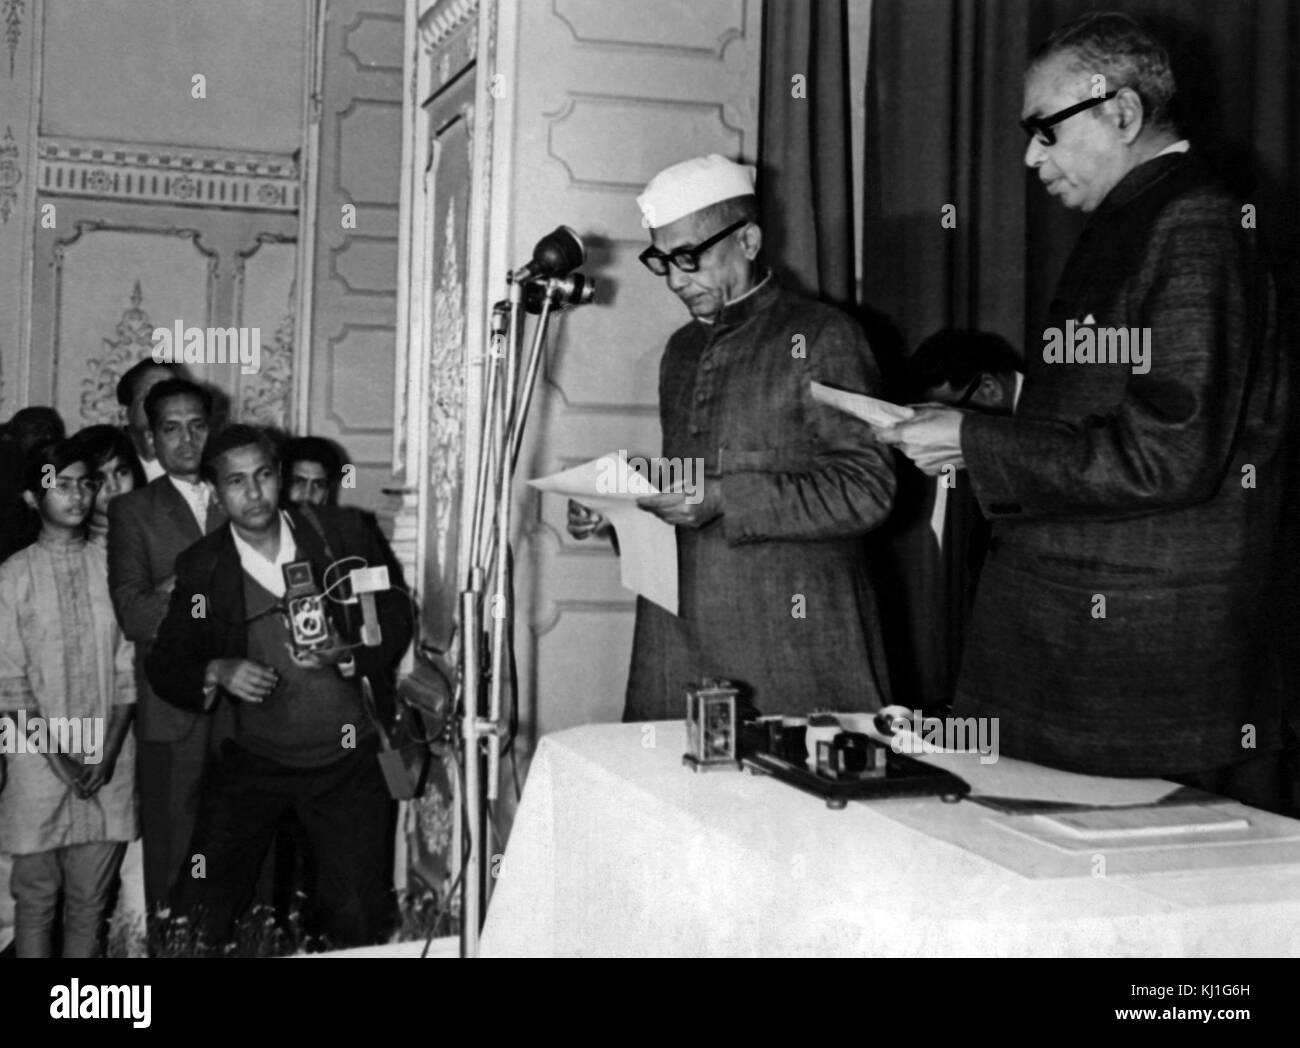 Chaudhary Charan Singh (1902-1987) als Chief Minister von Uttar Pradesh 1967. Er wurde später Premierminister der Republik Indien, vom 28. Juli 1979 bis 14. Januar 1980. Stockfoto